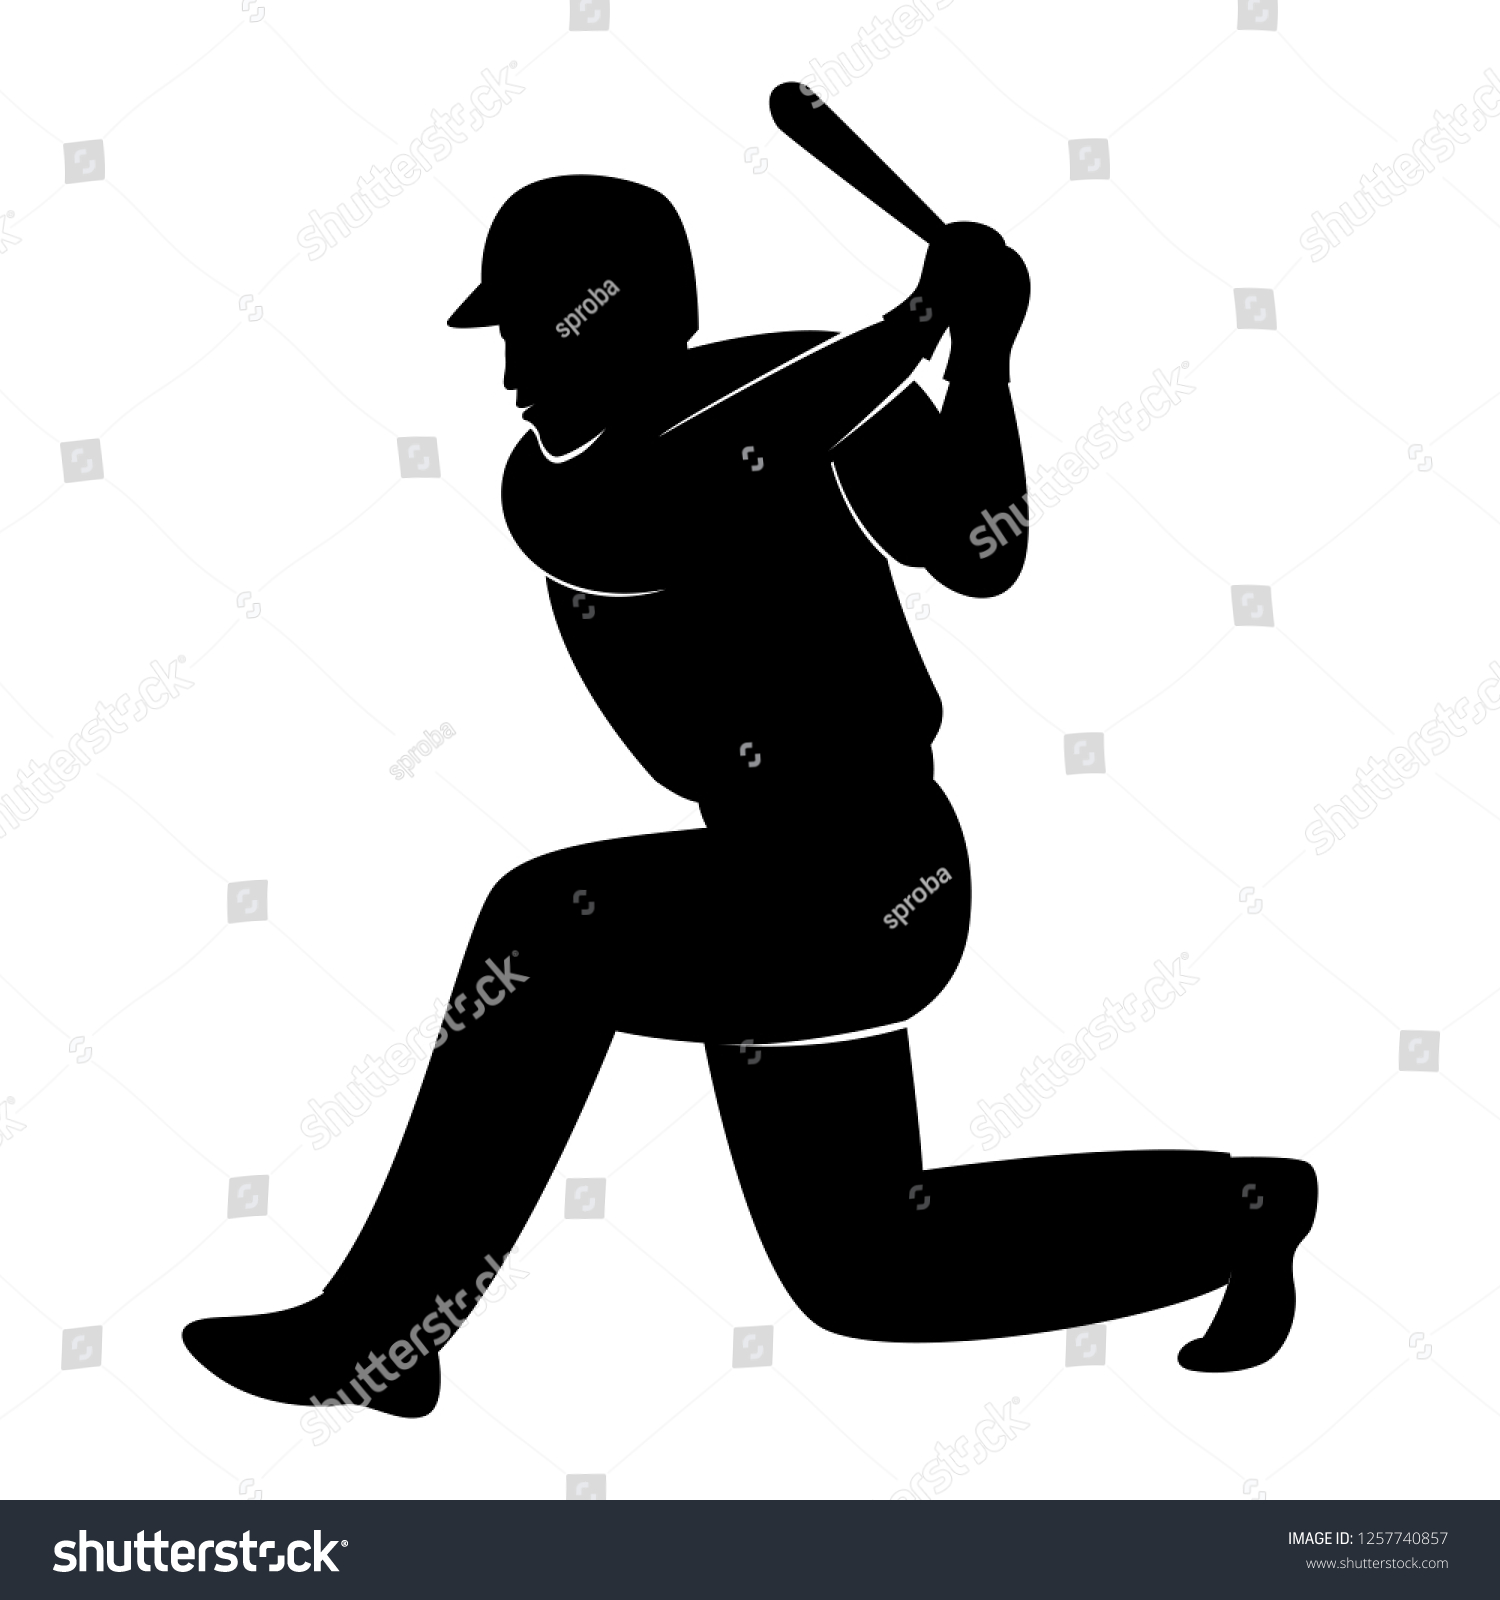 Baseball Player Vector Illustration Black Silhouette Stock Vector ...